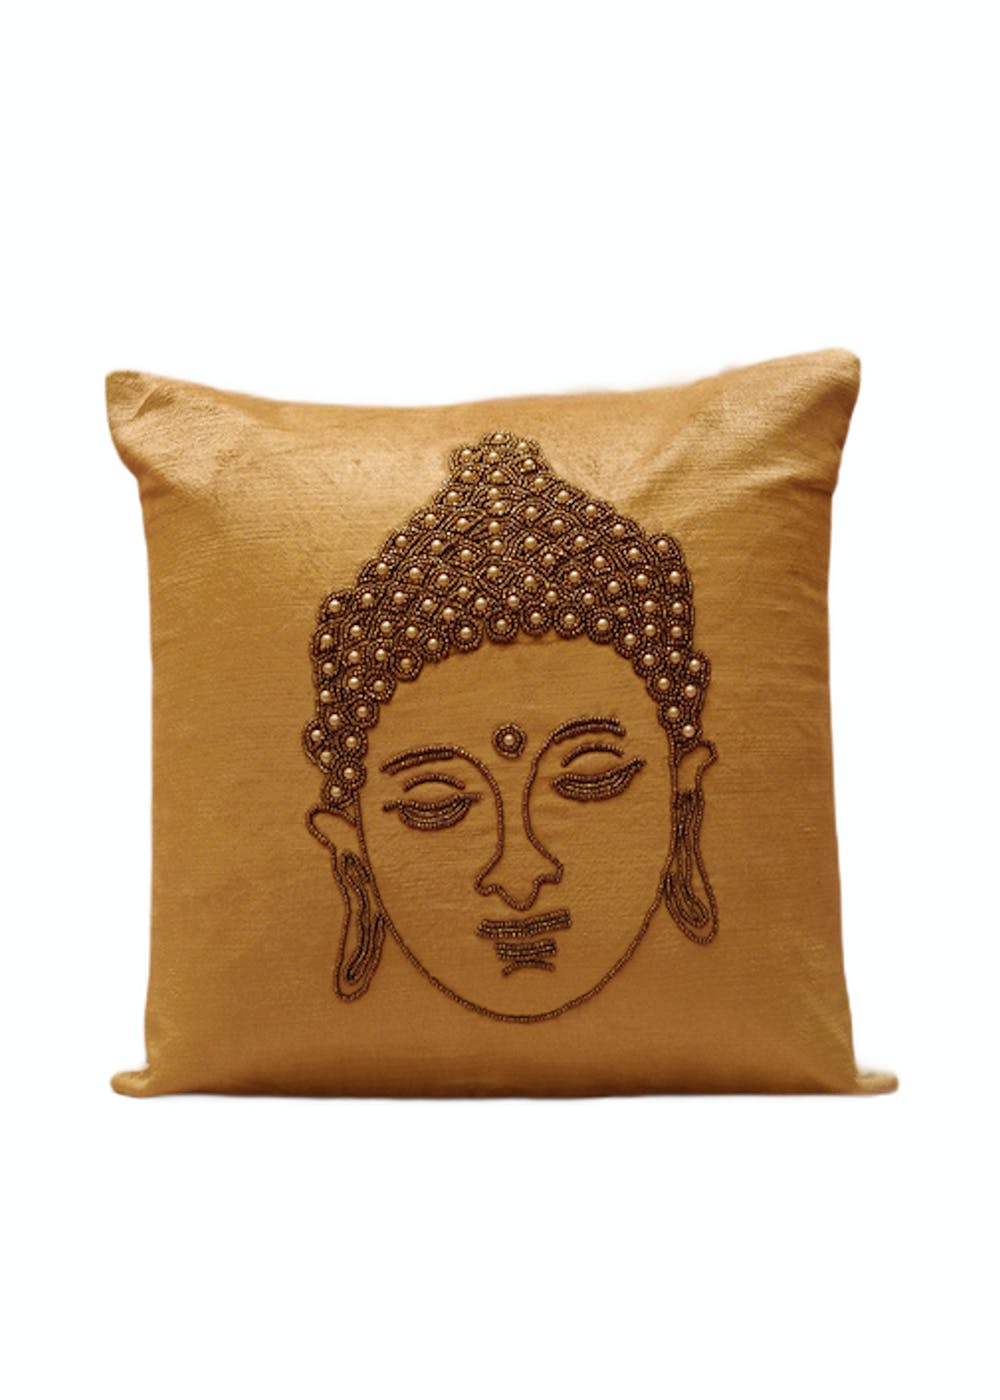 Get Buddha Cushion Cover (Beige) at ₹ 699 | LBB Shop